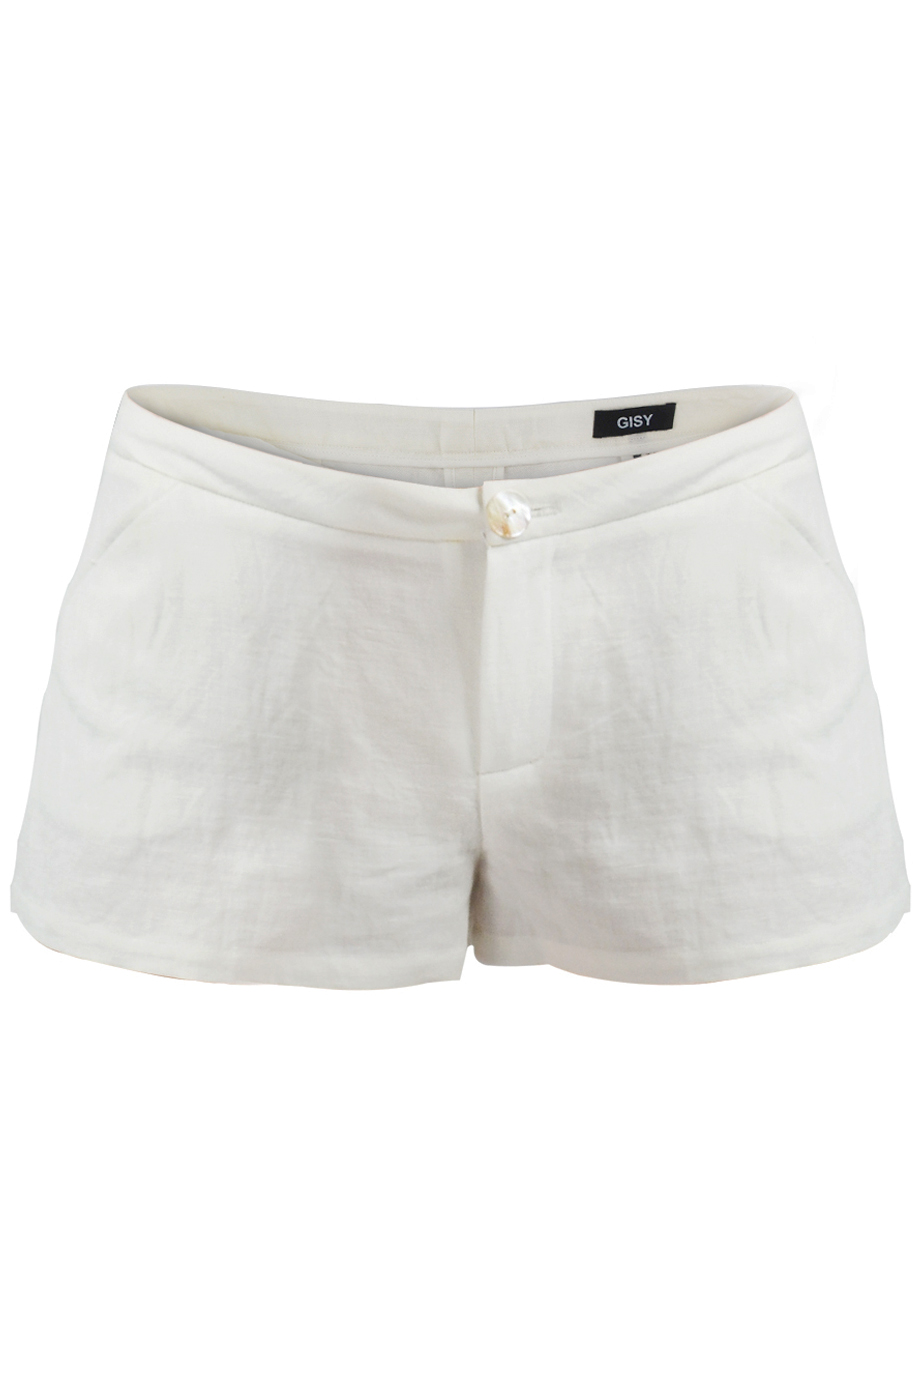 Quần Brynn Linen Shorts/ White 2211